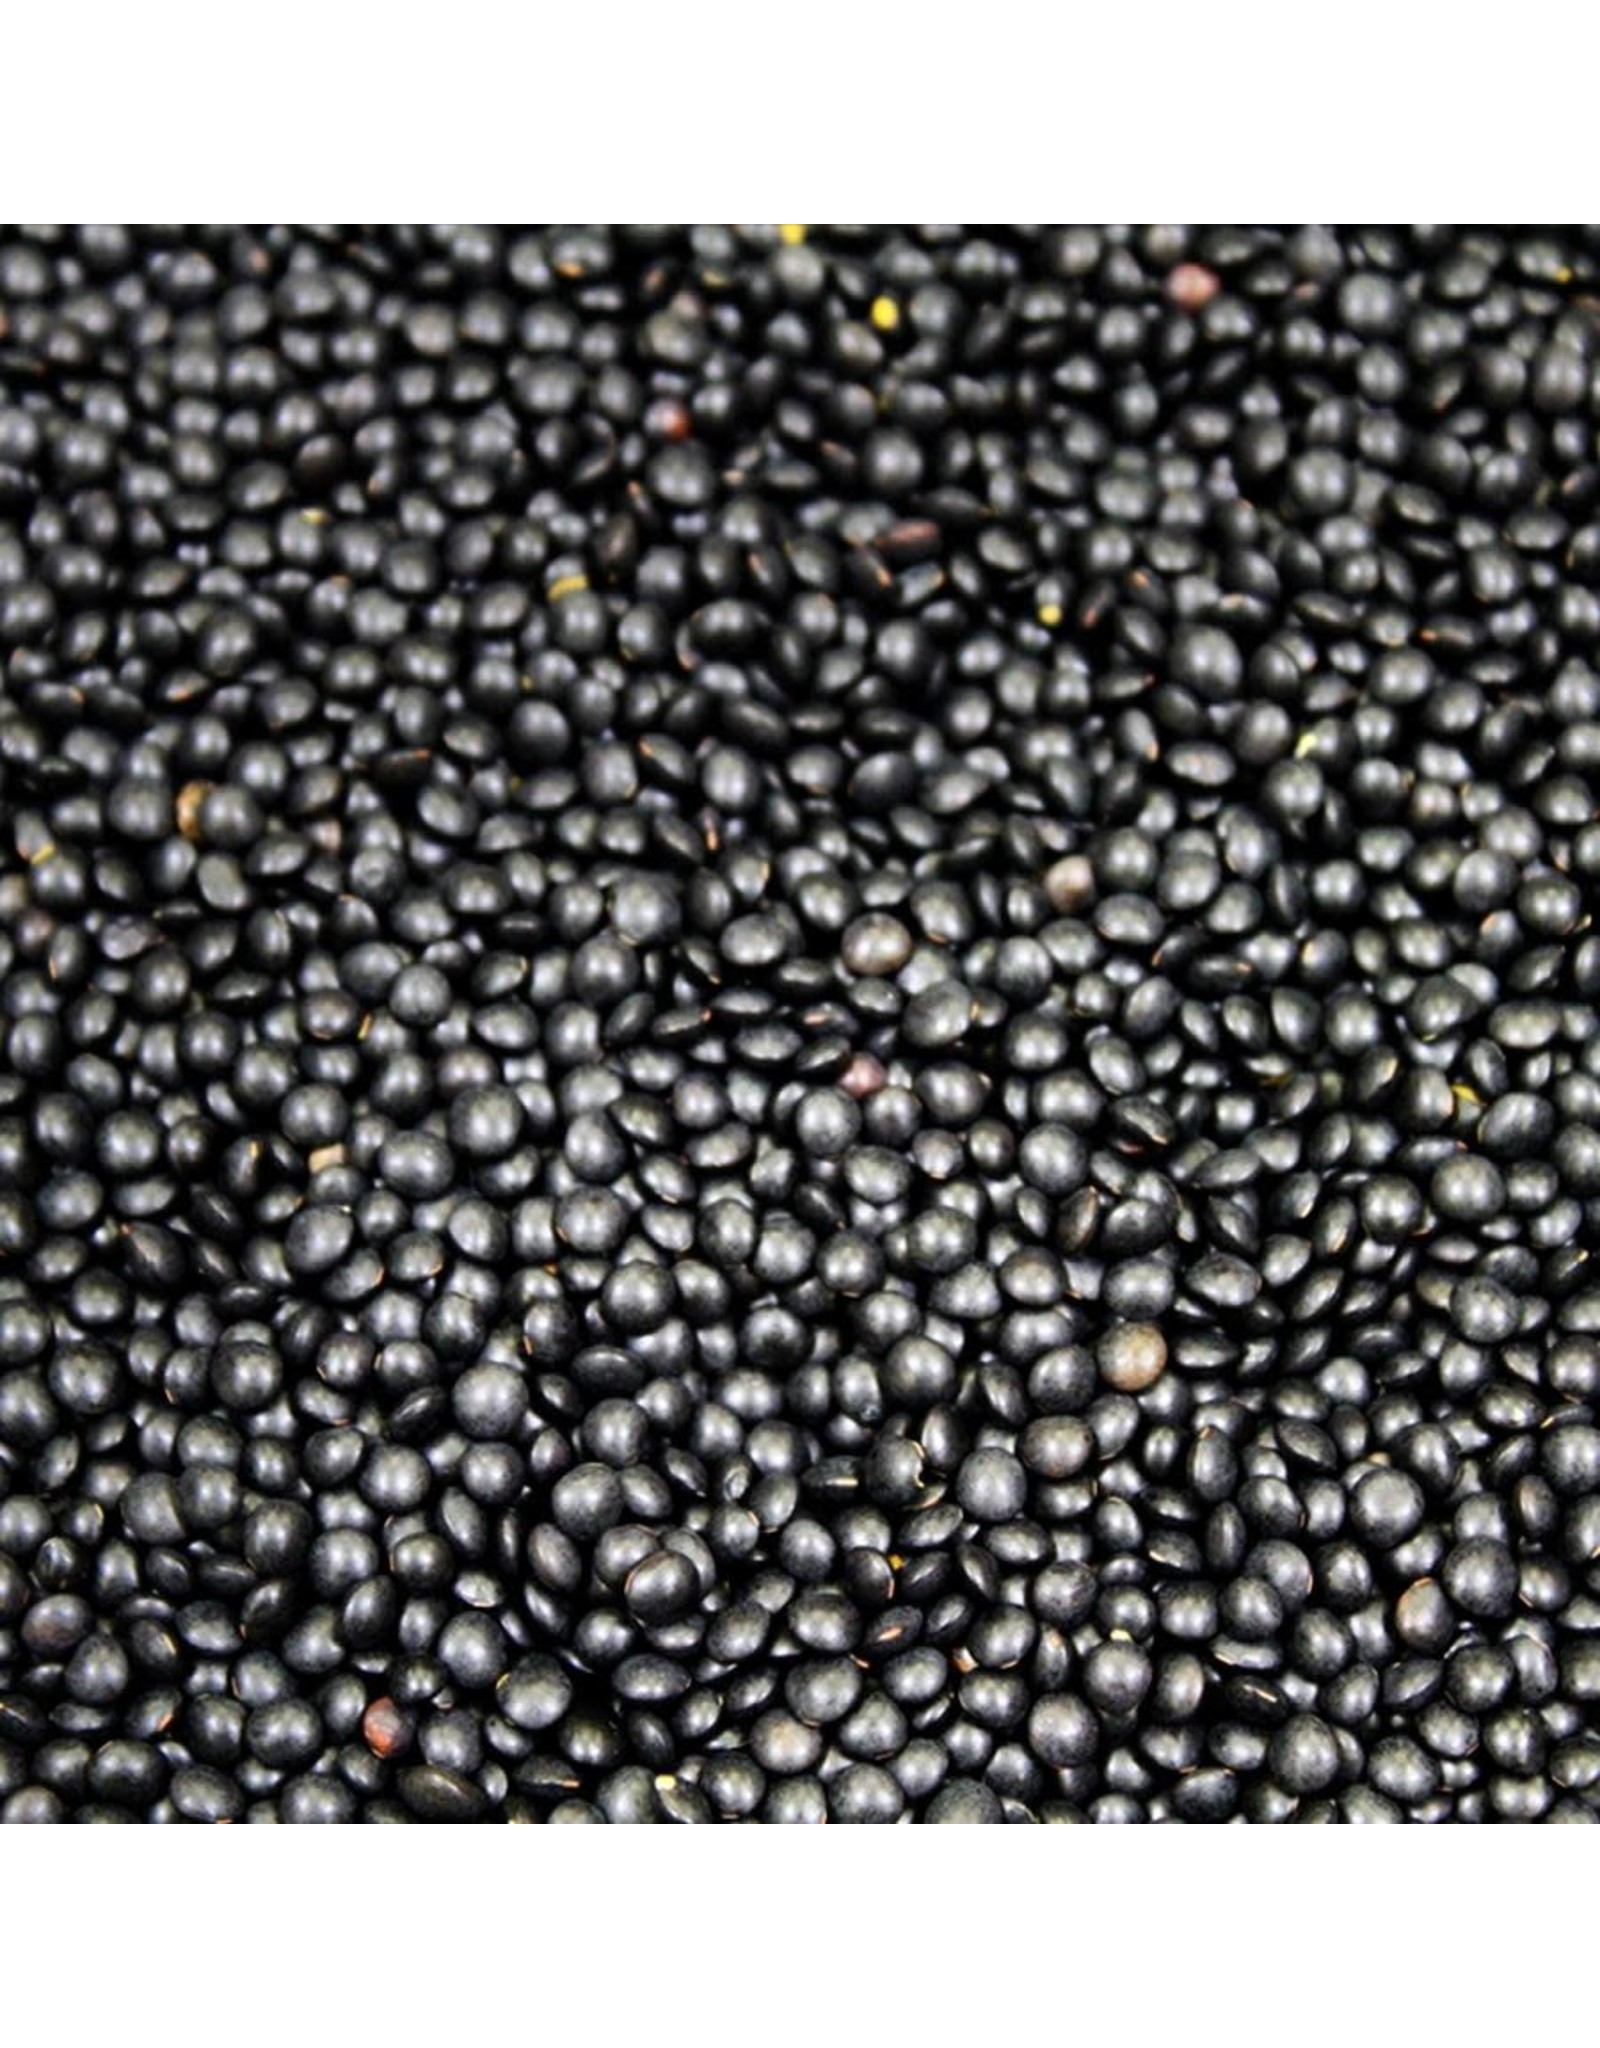 Timeless Natural Foods Timeless Black Beluga Lentils